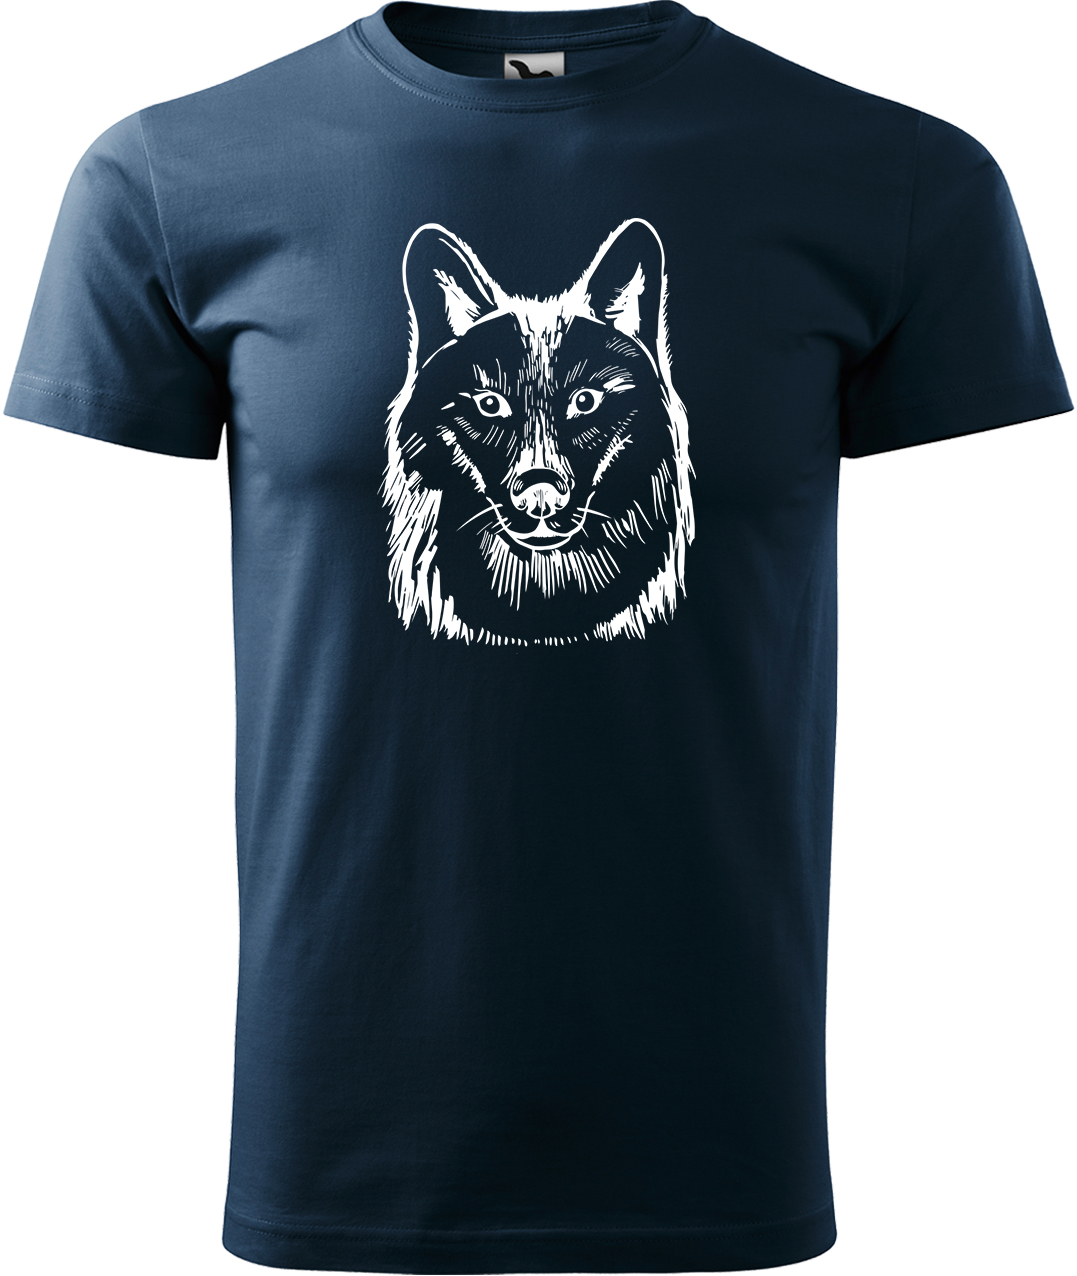 Pánské tričko s vlkem - Kresba vlka Velikost: S, Barva: Námořní modrá (02), Střih: pánský